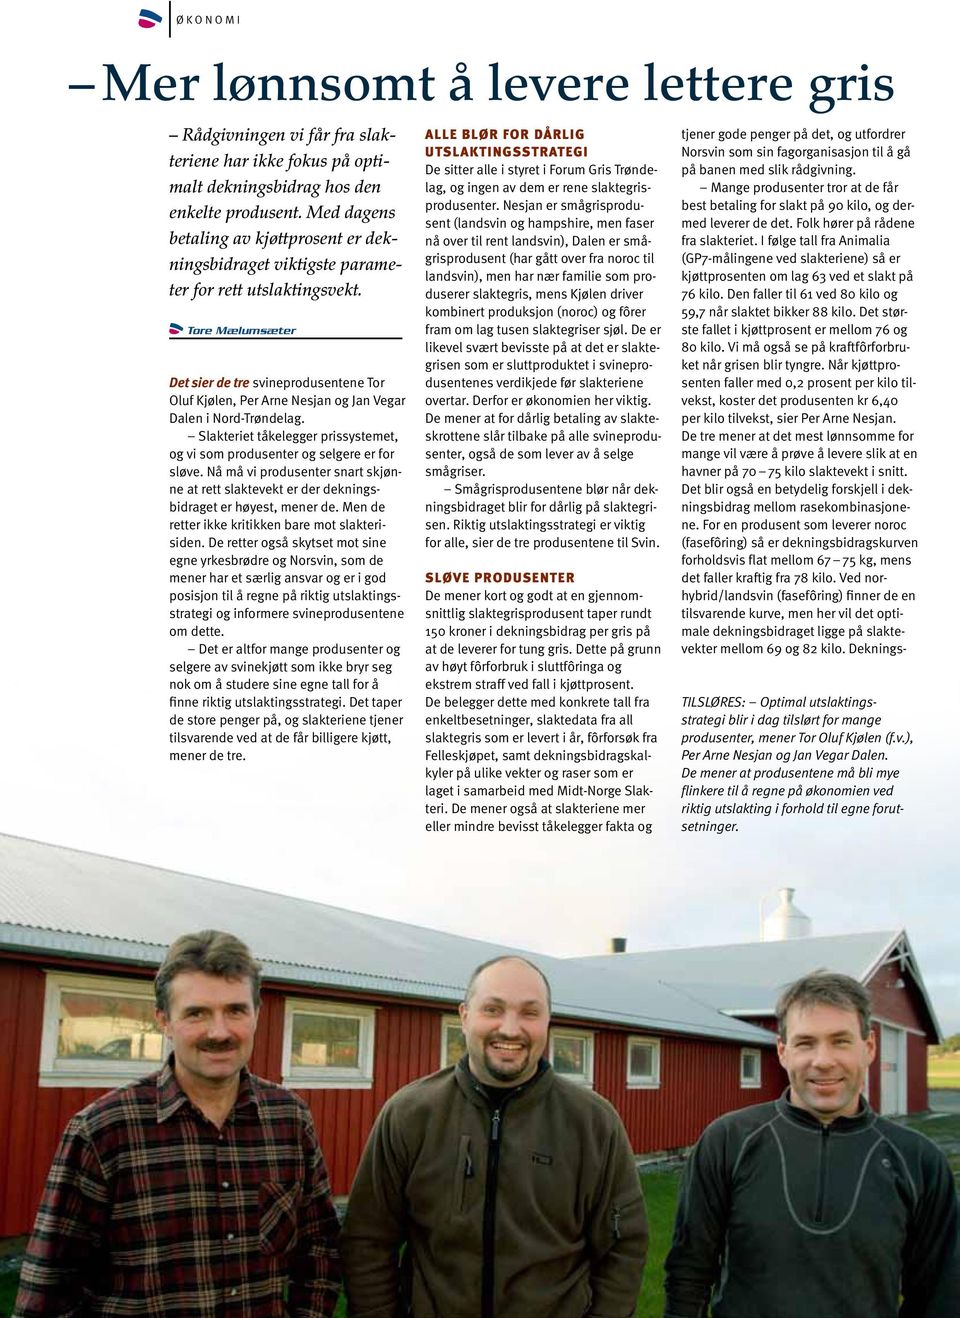 Tore Mælumsæter Det sier de tre svineprodusentene Tor Oluf Kjølen, Per Arne Nesjan og Jan Vegar Dalen i Nord-Trøndelag.